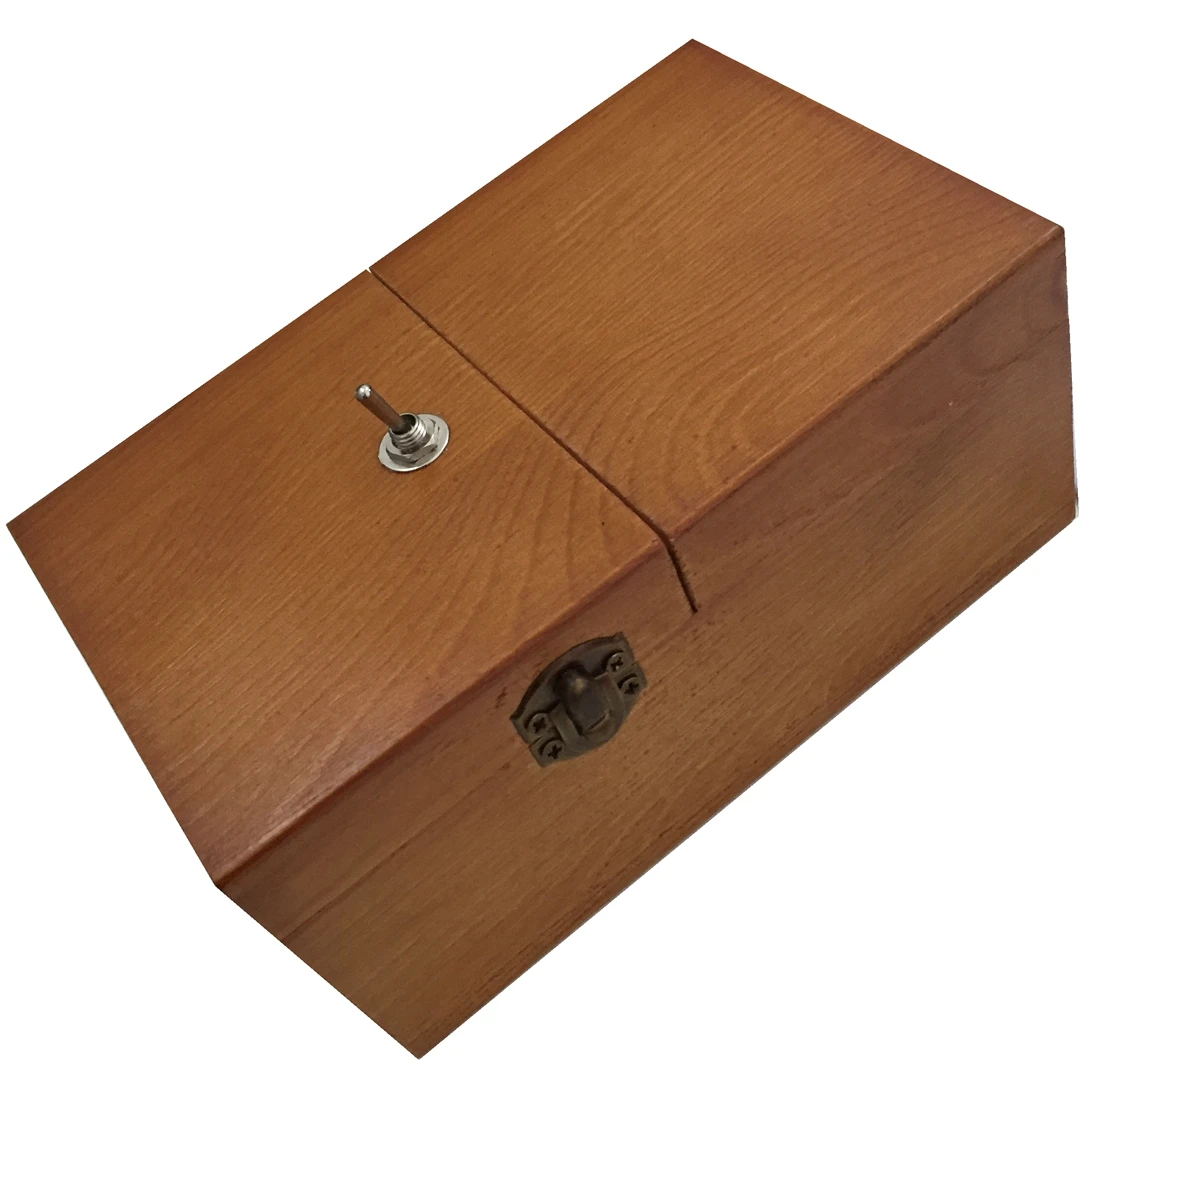 Креативная скучная деревянная коробка для хранения ToySuper забавная антистрессовая бесполезная коробка подарки для взрослых и детей сюрприз шутка